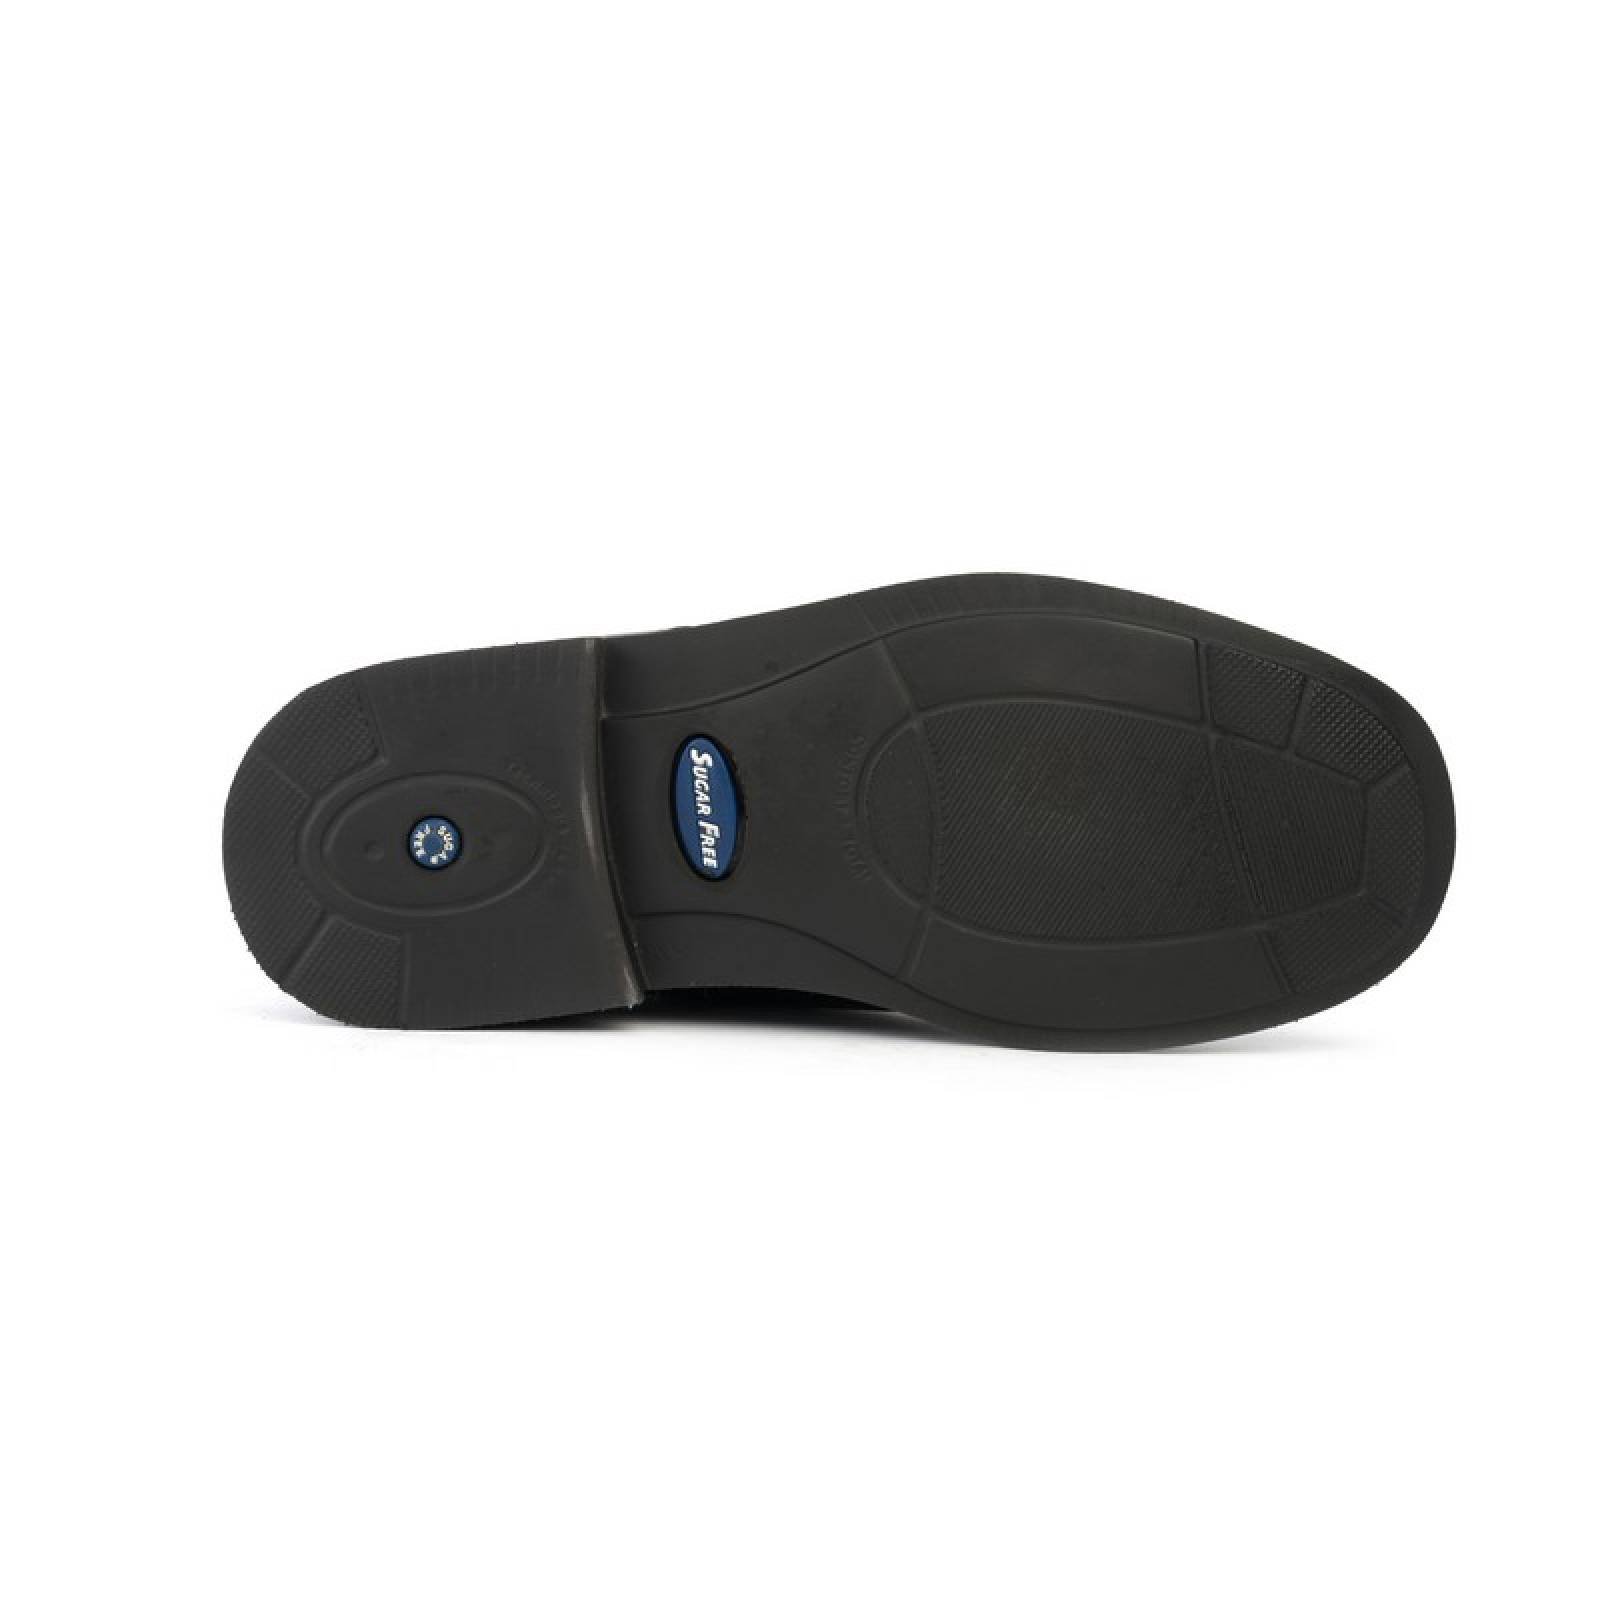 Jarking - Zapato Formal Negro con Ajuste de Velcro y Amplitud Especial para Caballero